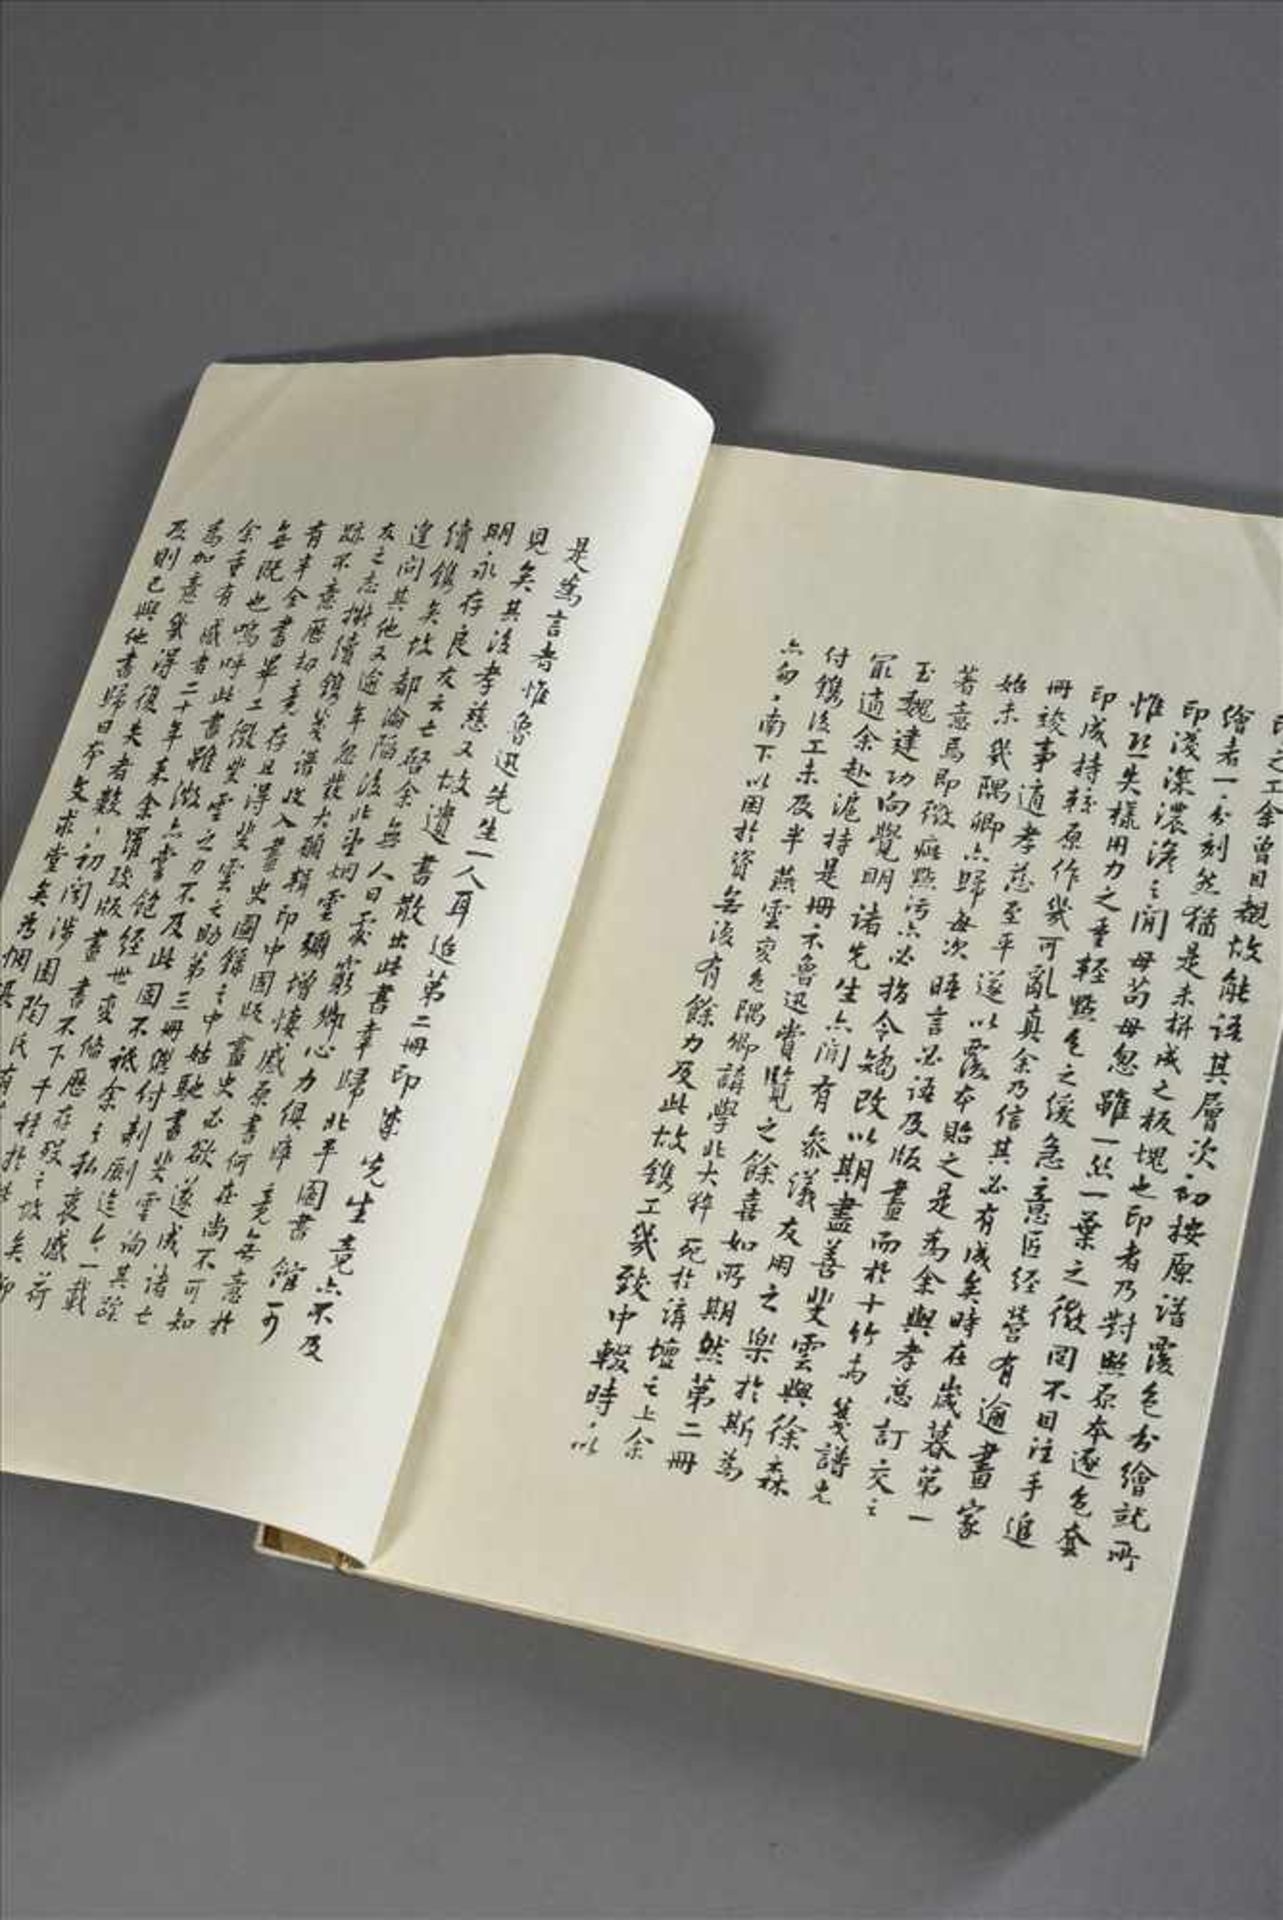 Chinesisches Buch mit Farbholzschnitten und Blinddrucken als Künstlervorlagen, 31x21cm, Einband etw. - Bild 3 aus 4